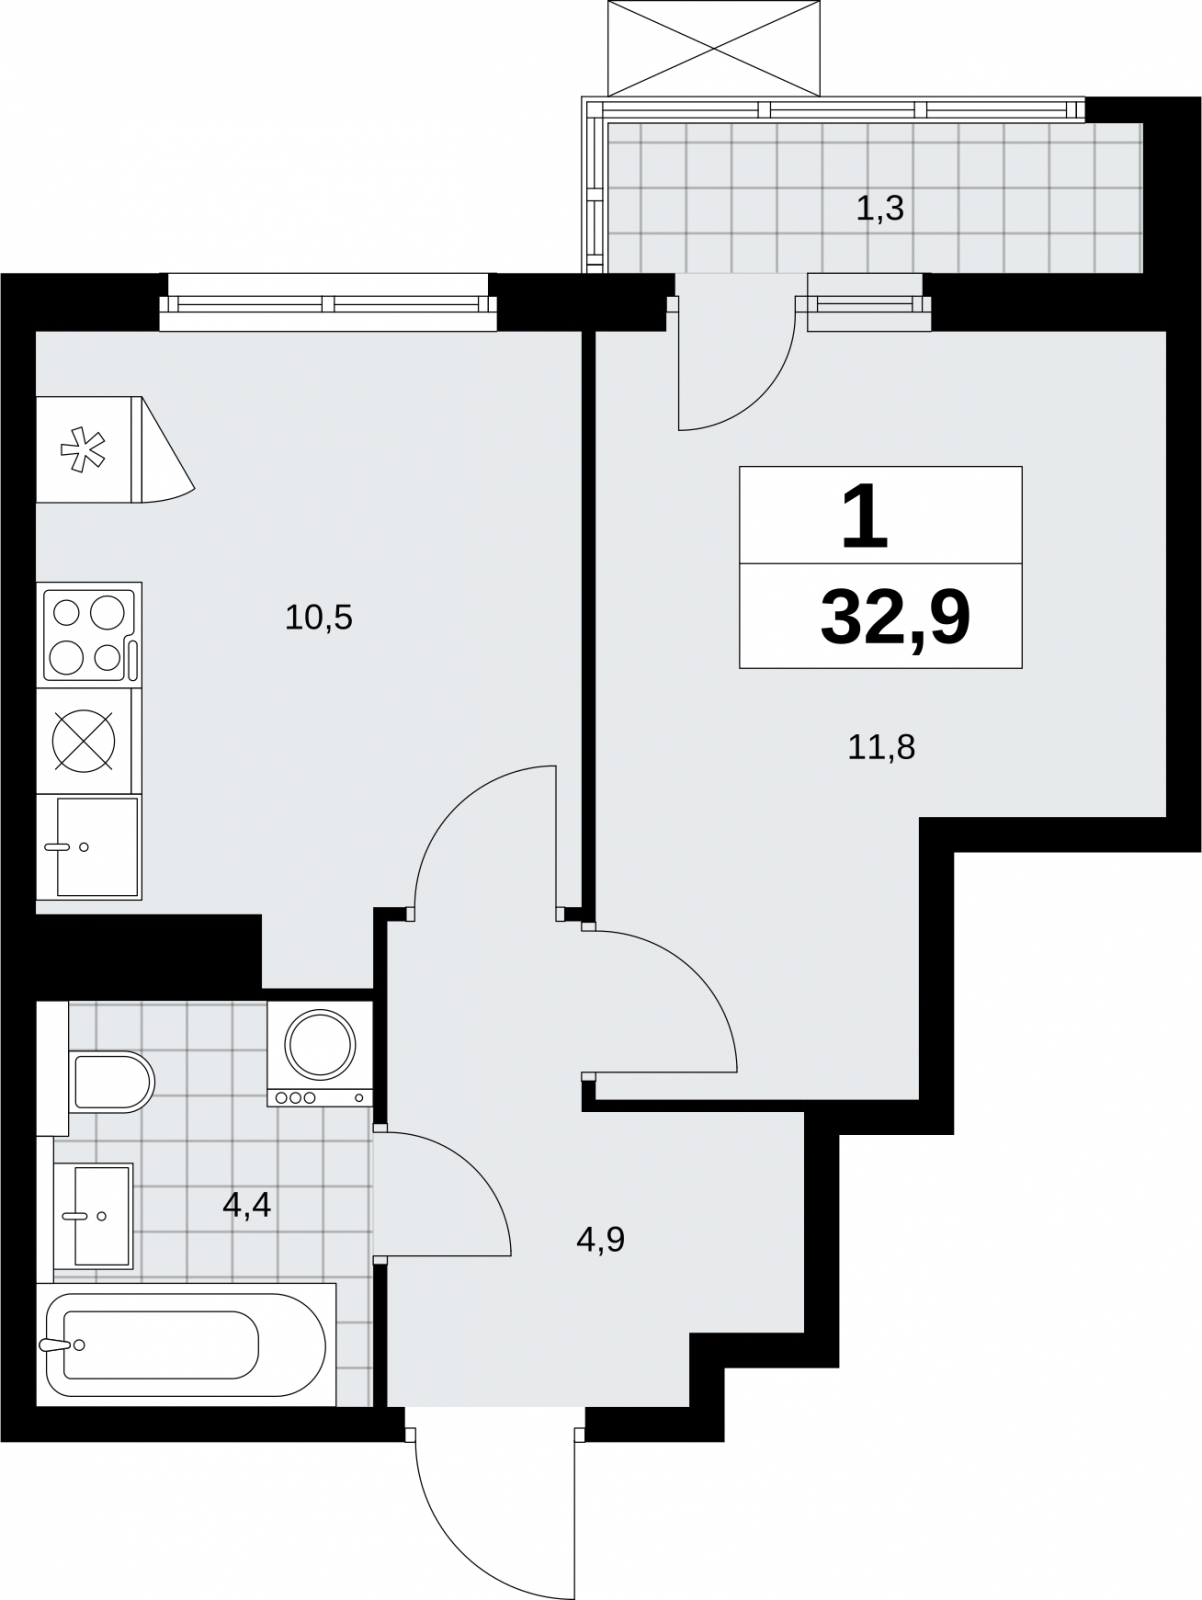 Продается 1-комнатная квартира в новом жилом комплексе, метро рядом